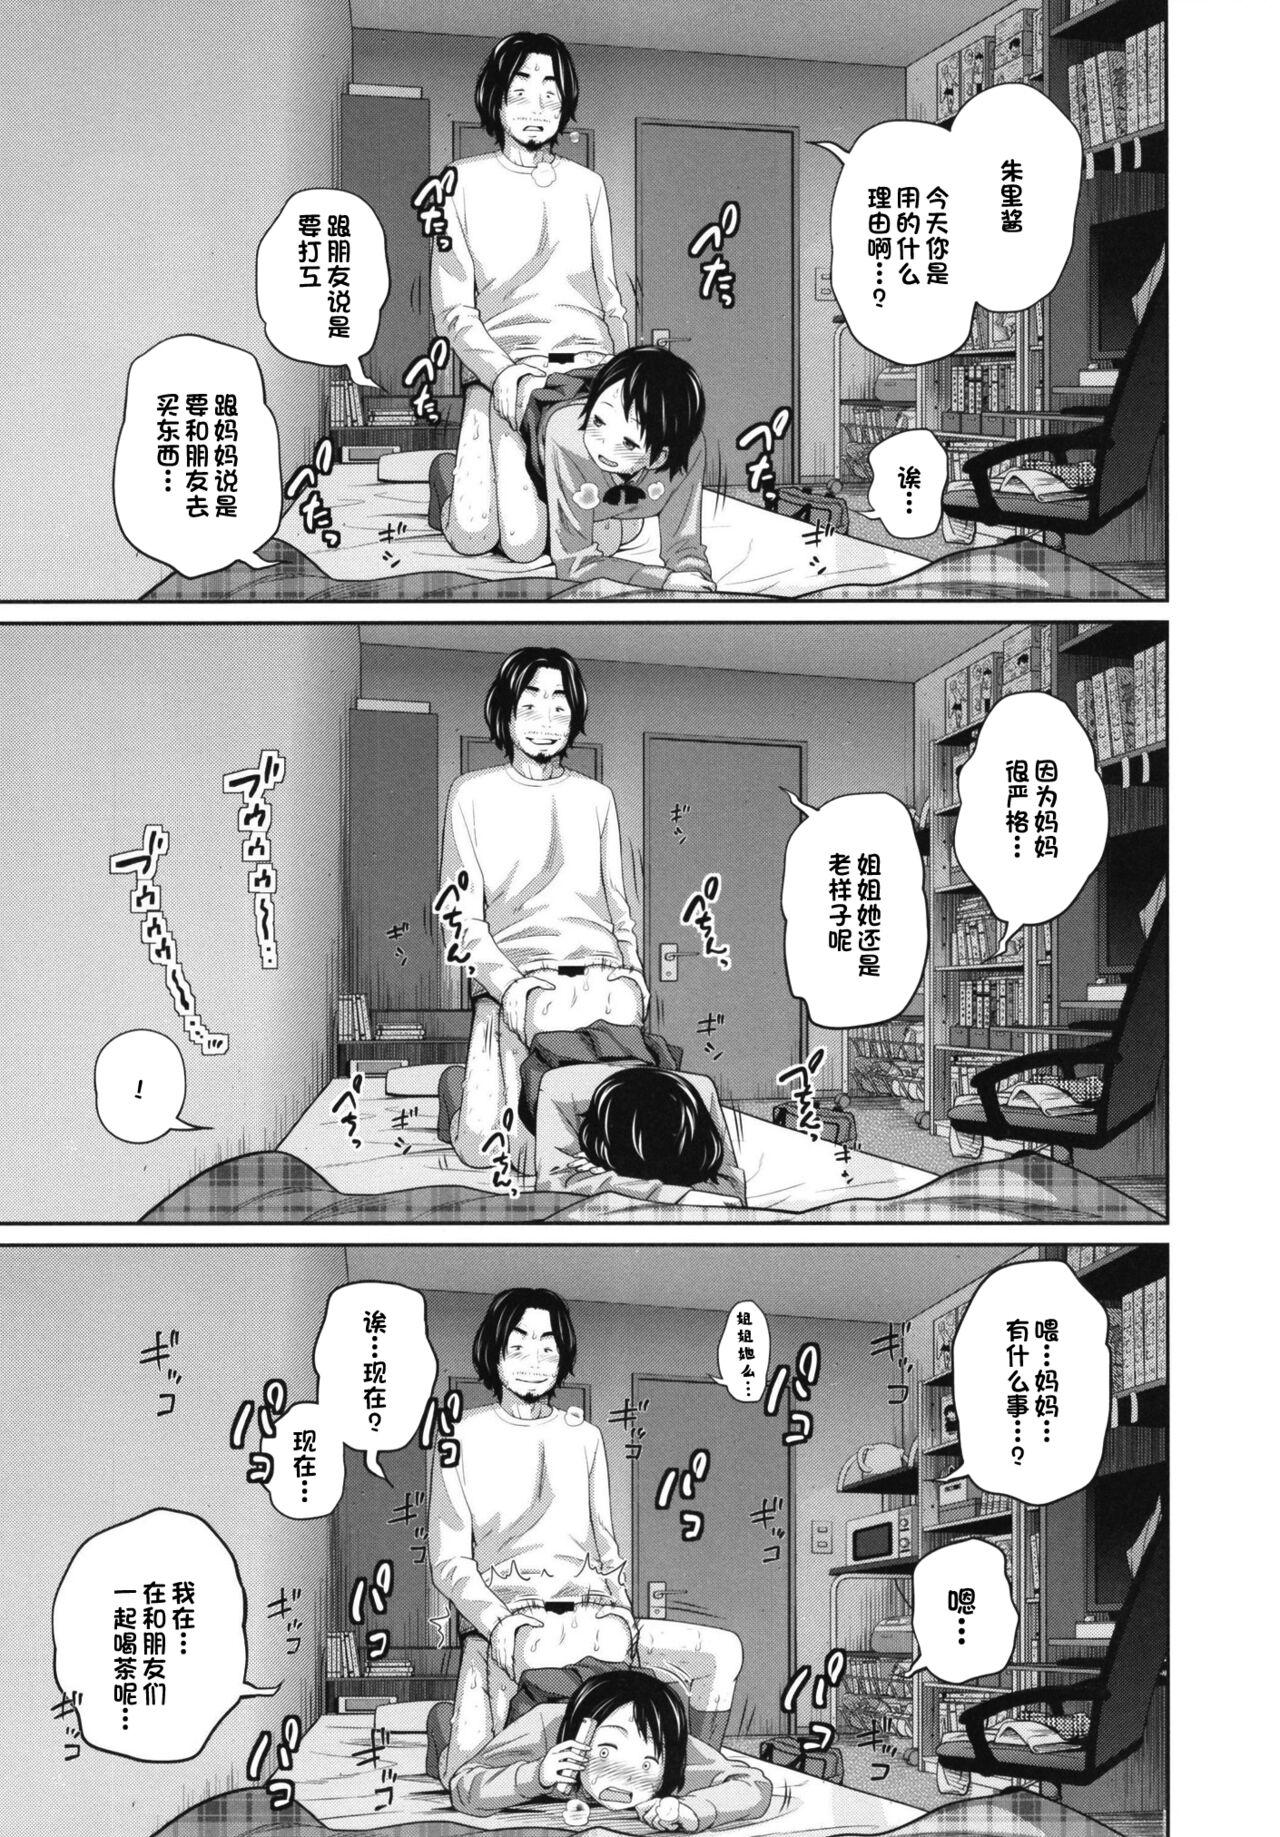 Com Kono Naka ni Kinshin Soukan Shiteiru Musume ga 3-nin Imasu #02 | 这些女孩当中正在近亲相奸的有3人 #2 Gapes Gaping Asshole - Page 9